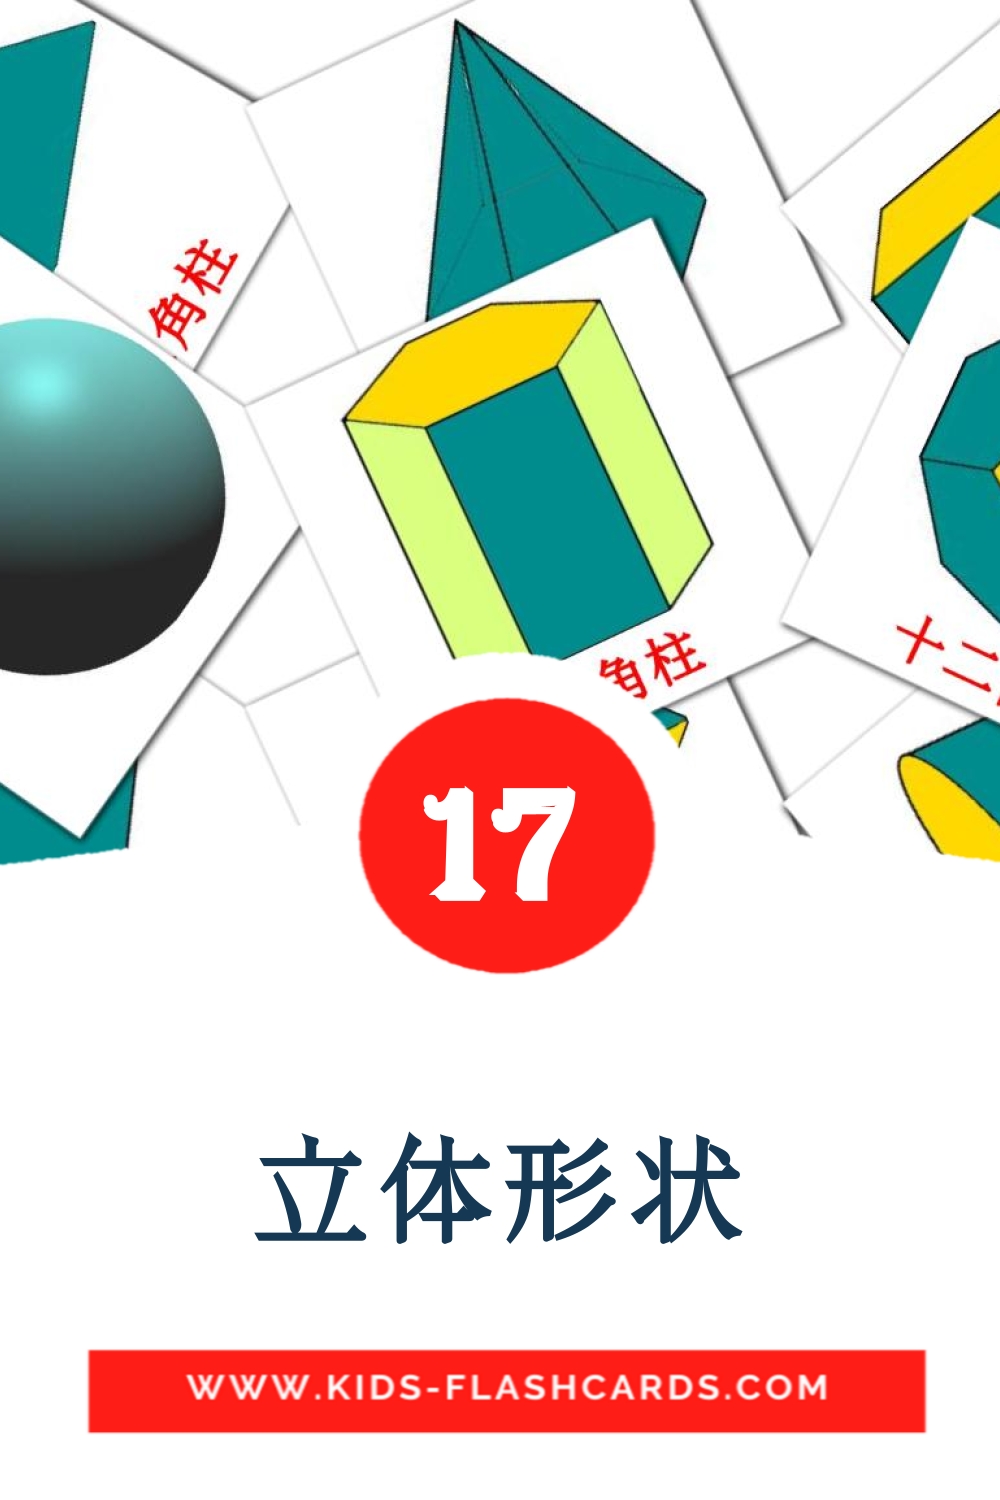 17 tarjetas didacticas de 立体形状 para el jardín de infancia en chino(tradicional)